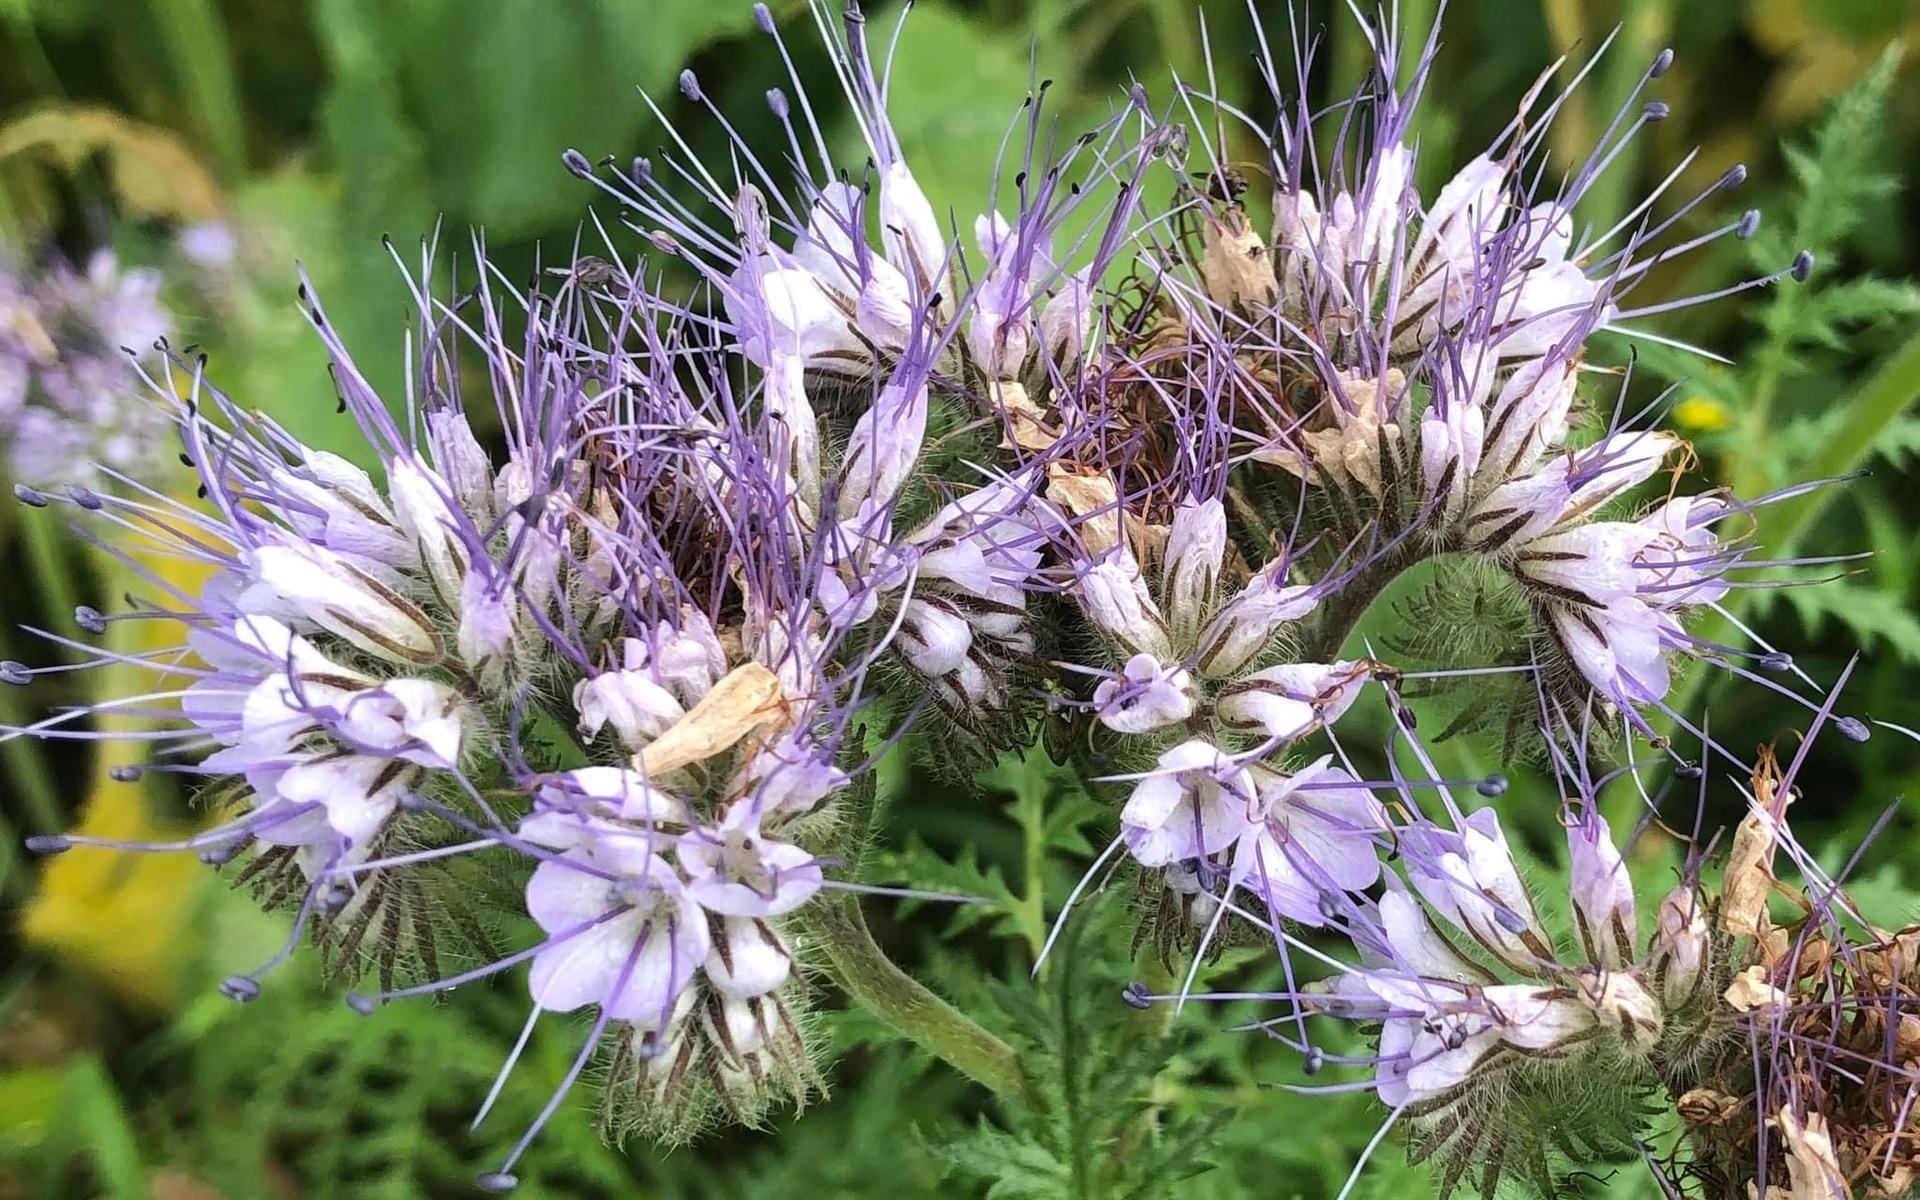 Honungsfacelia fotad i Kållered, en bra blomma för humlor och bin.